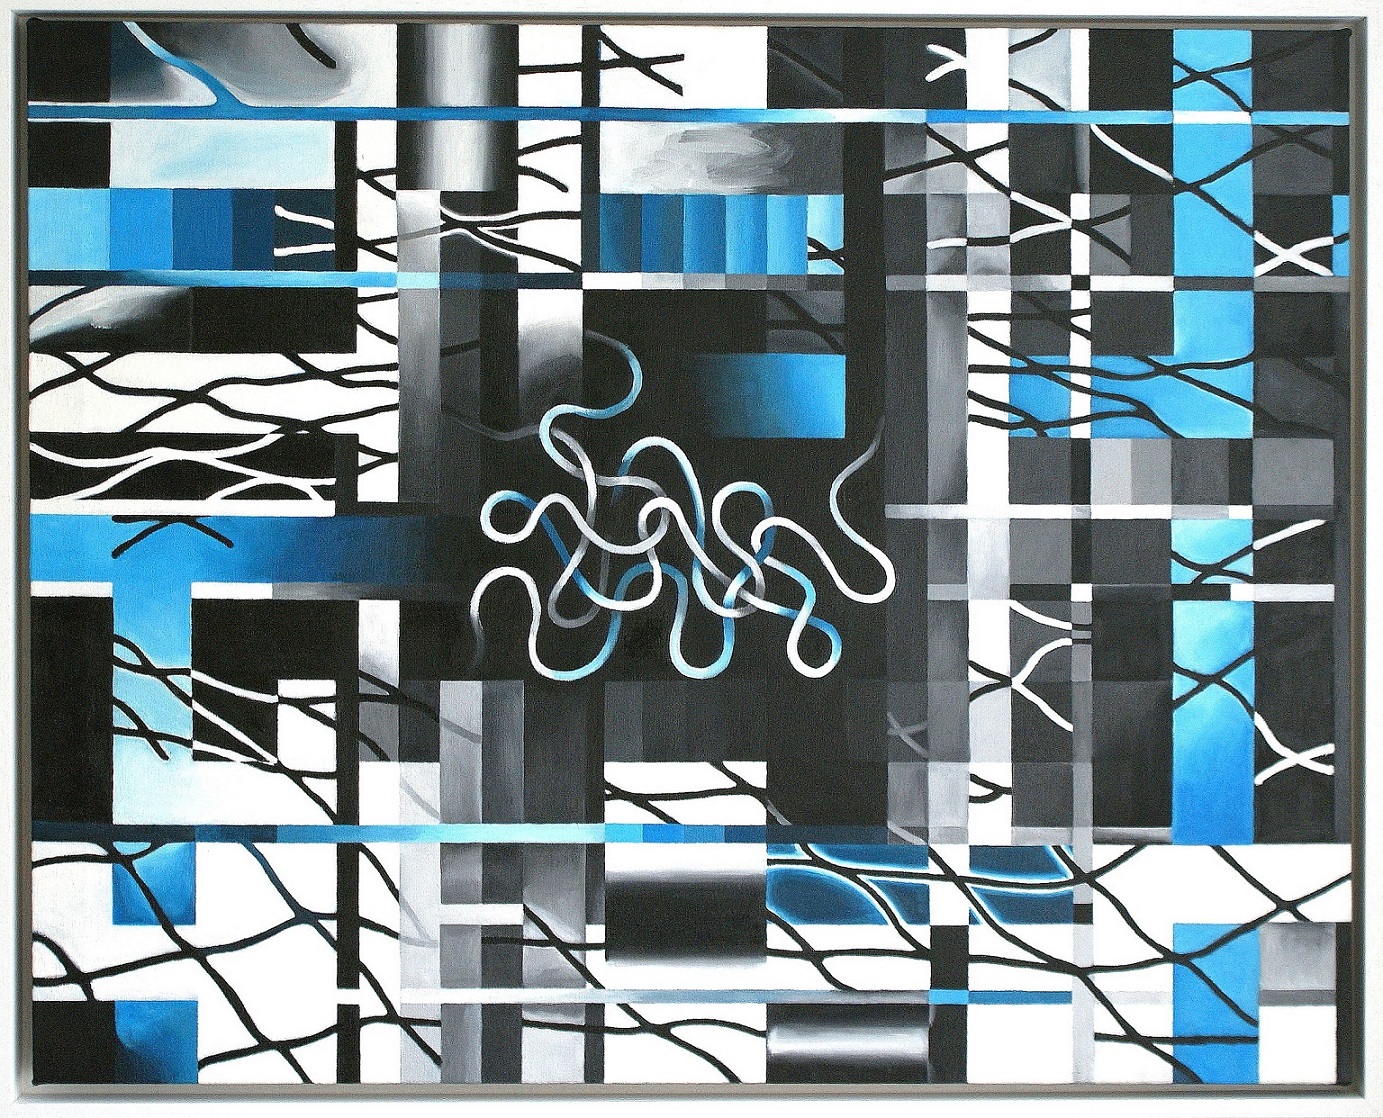 Entanglement (Oil on canvas, 80cm x 100cm)